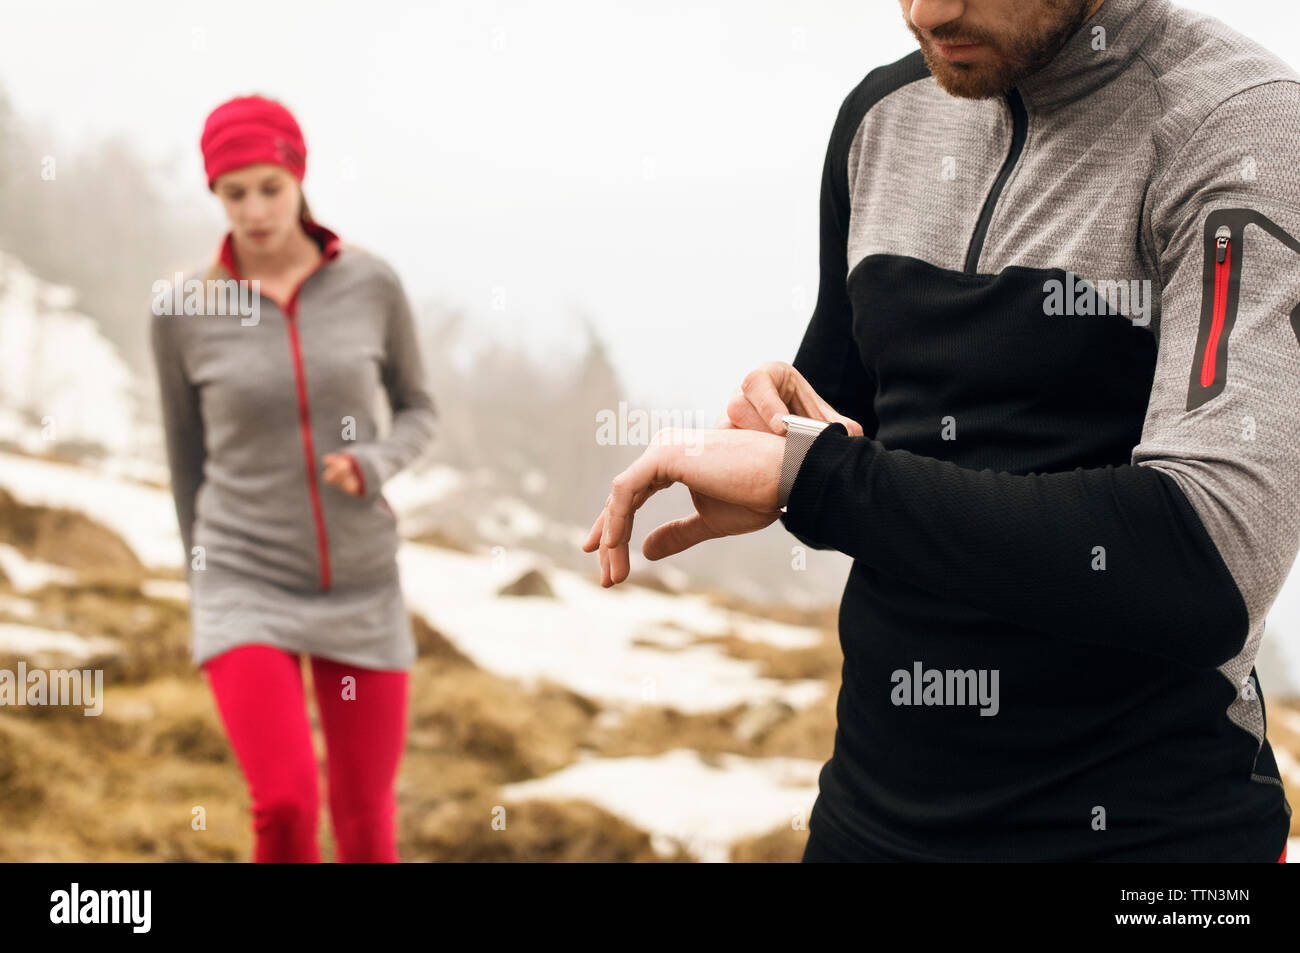 Männliche und weibliche Athleten auf dem Berg im Winter Stockfoto